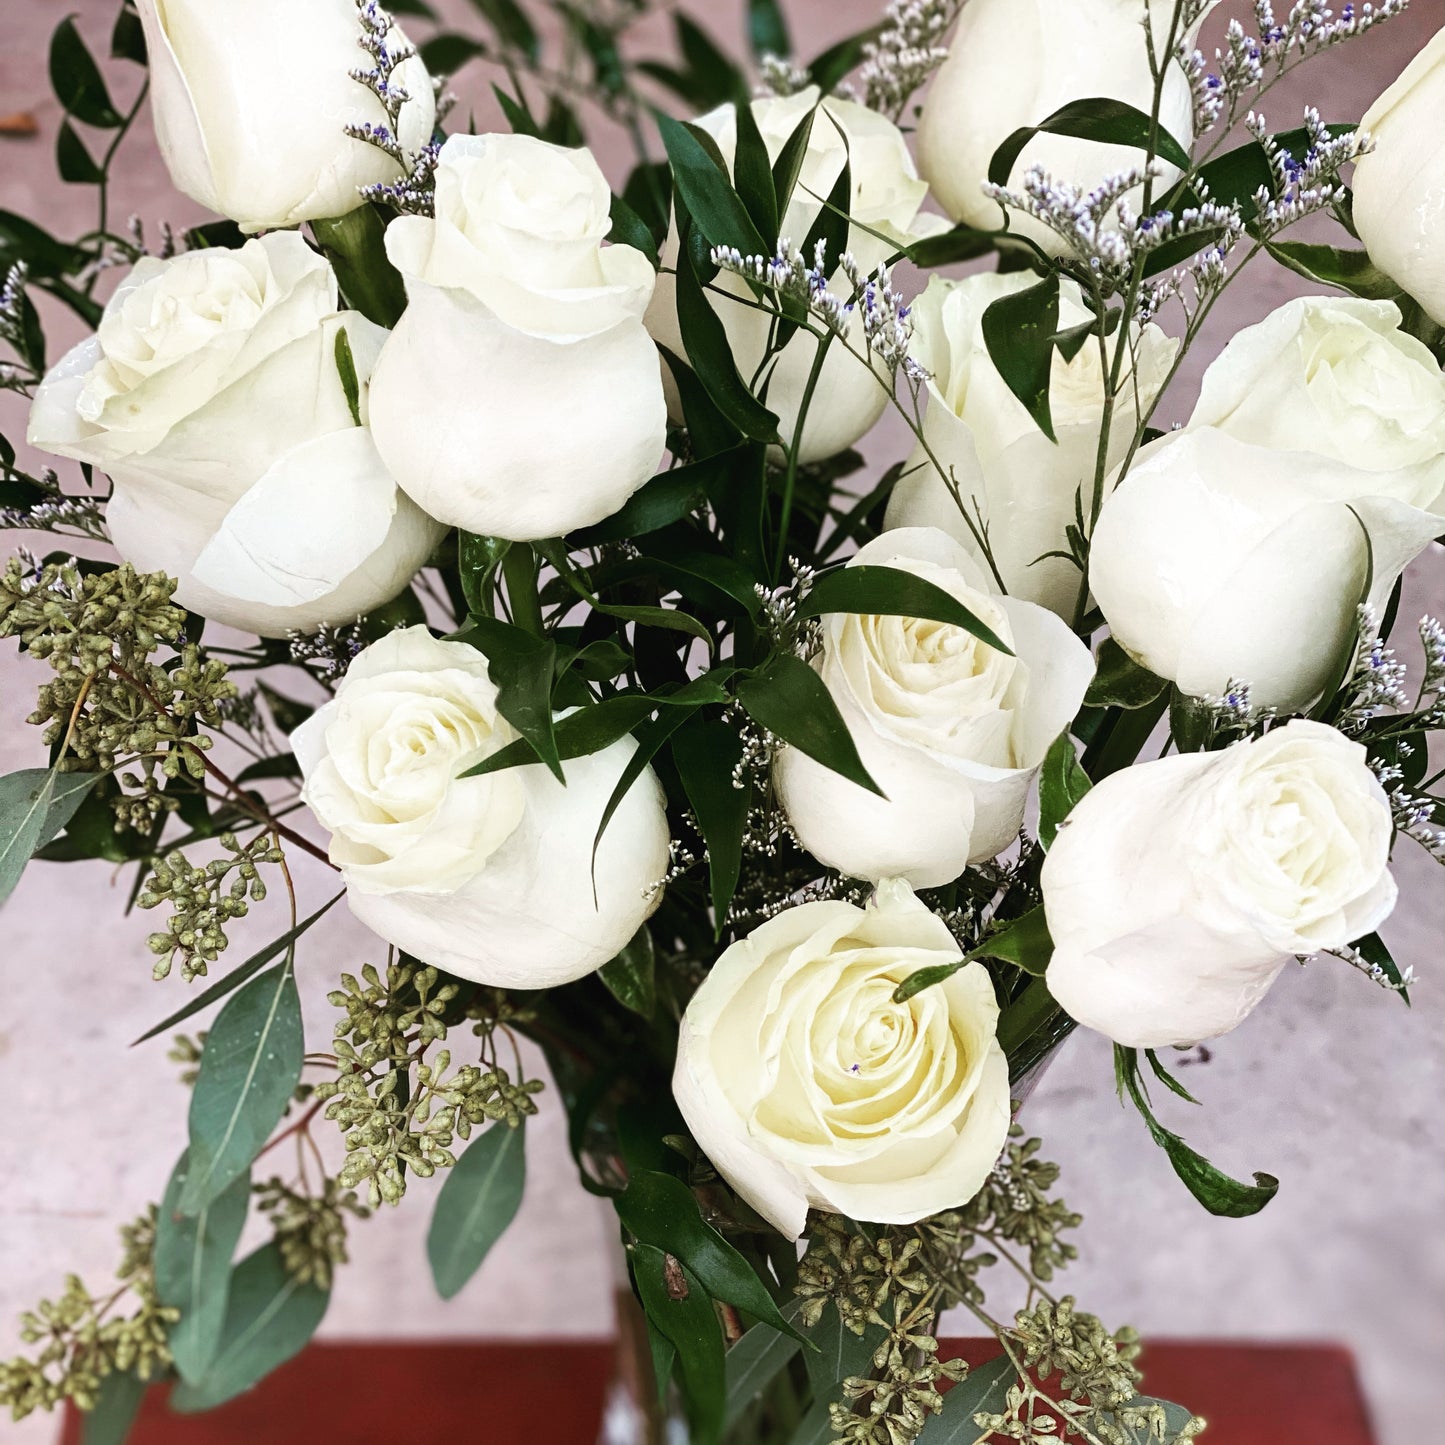 White roses.  Dozen white roses. Stunning white roses.